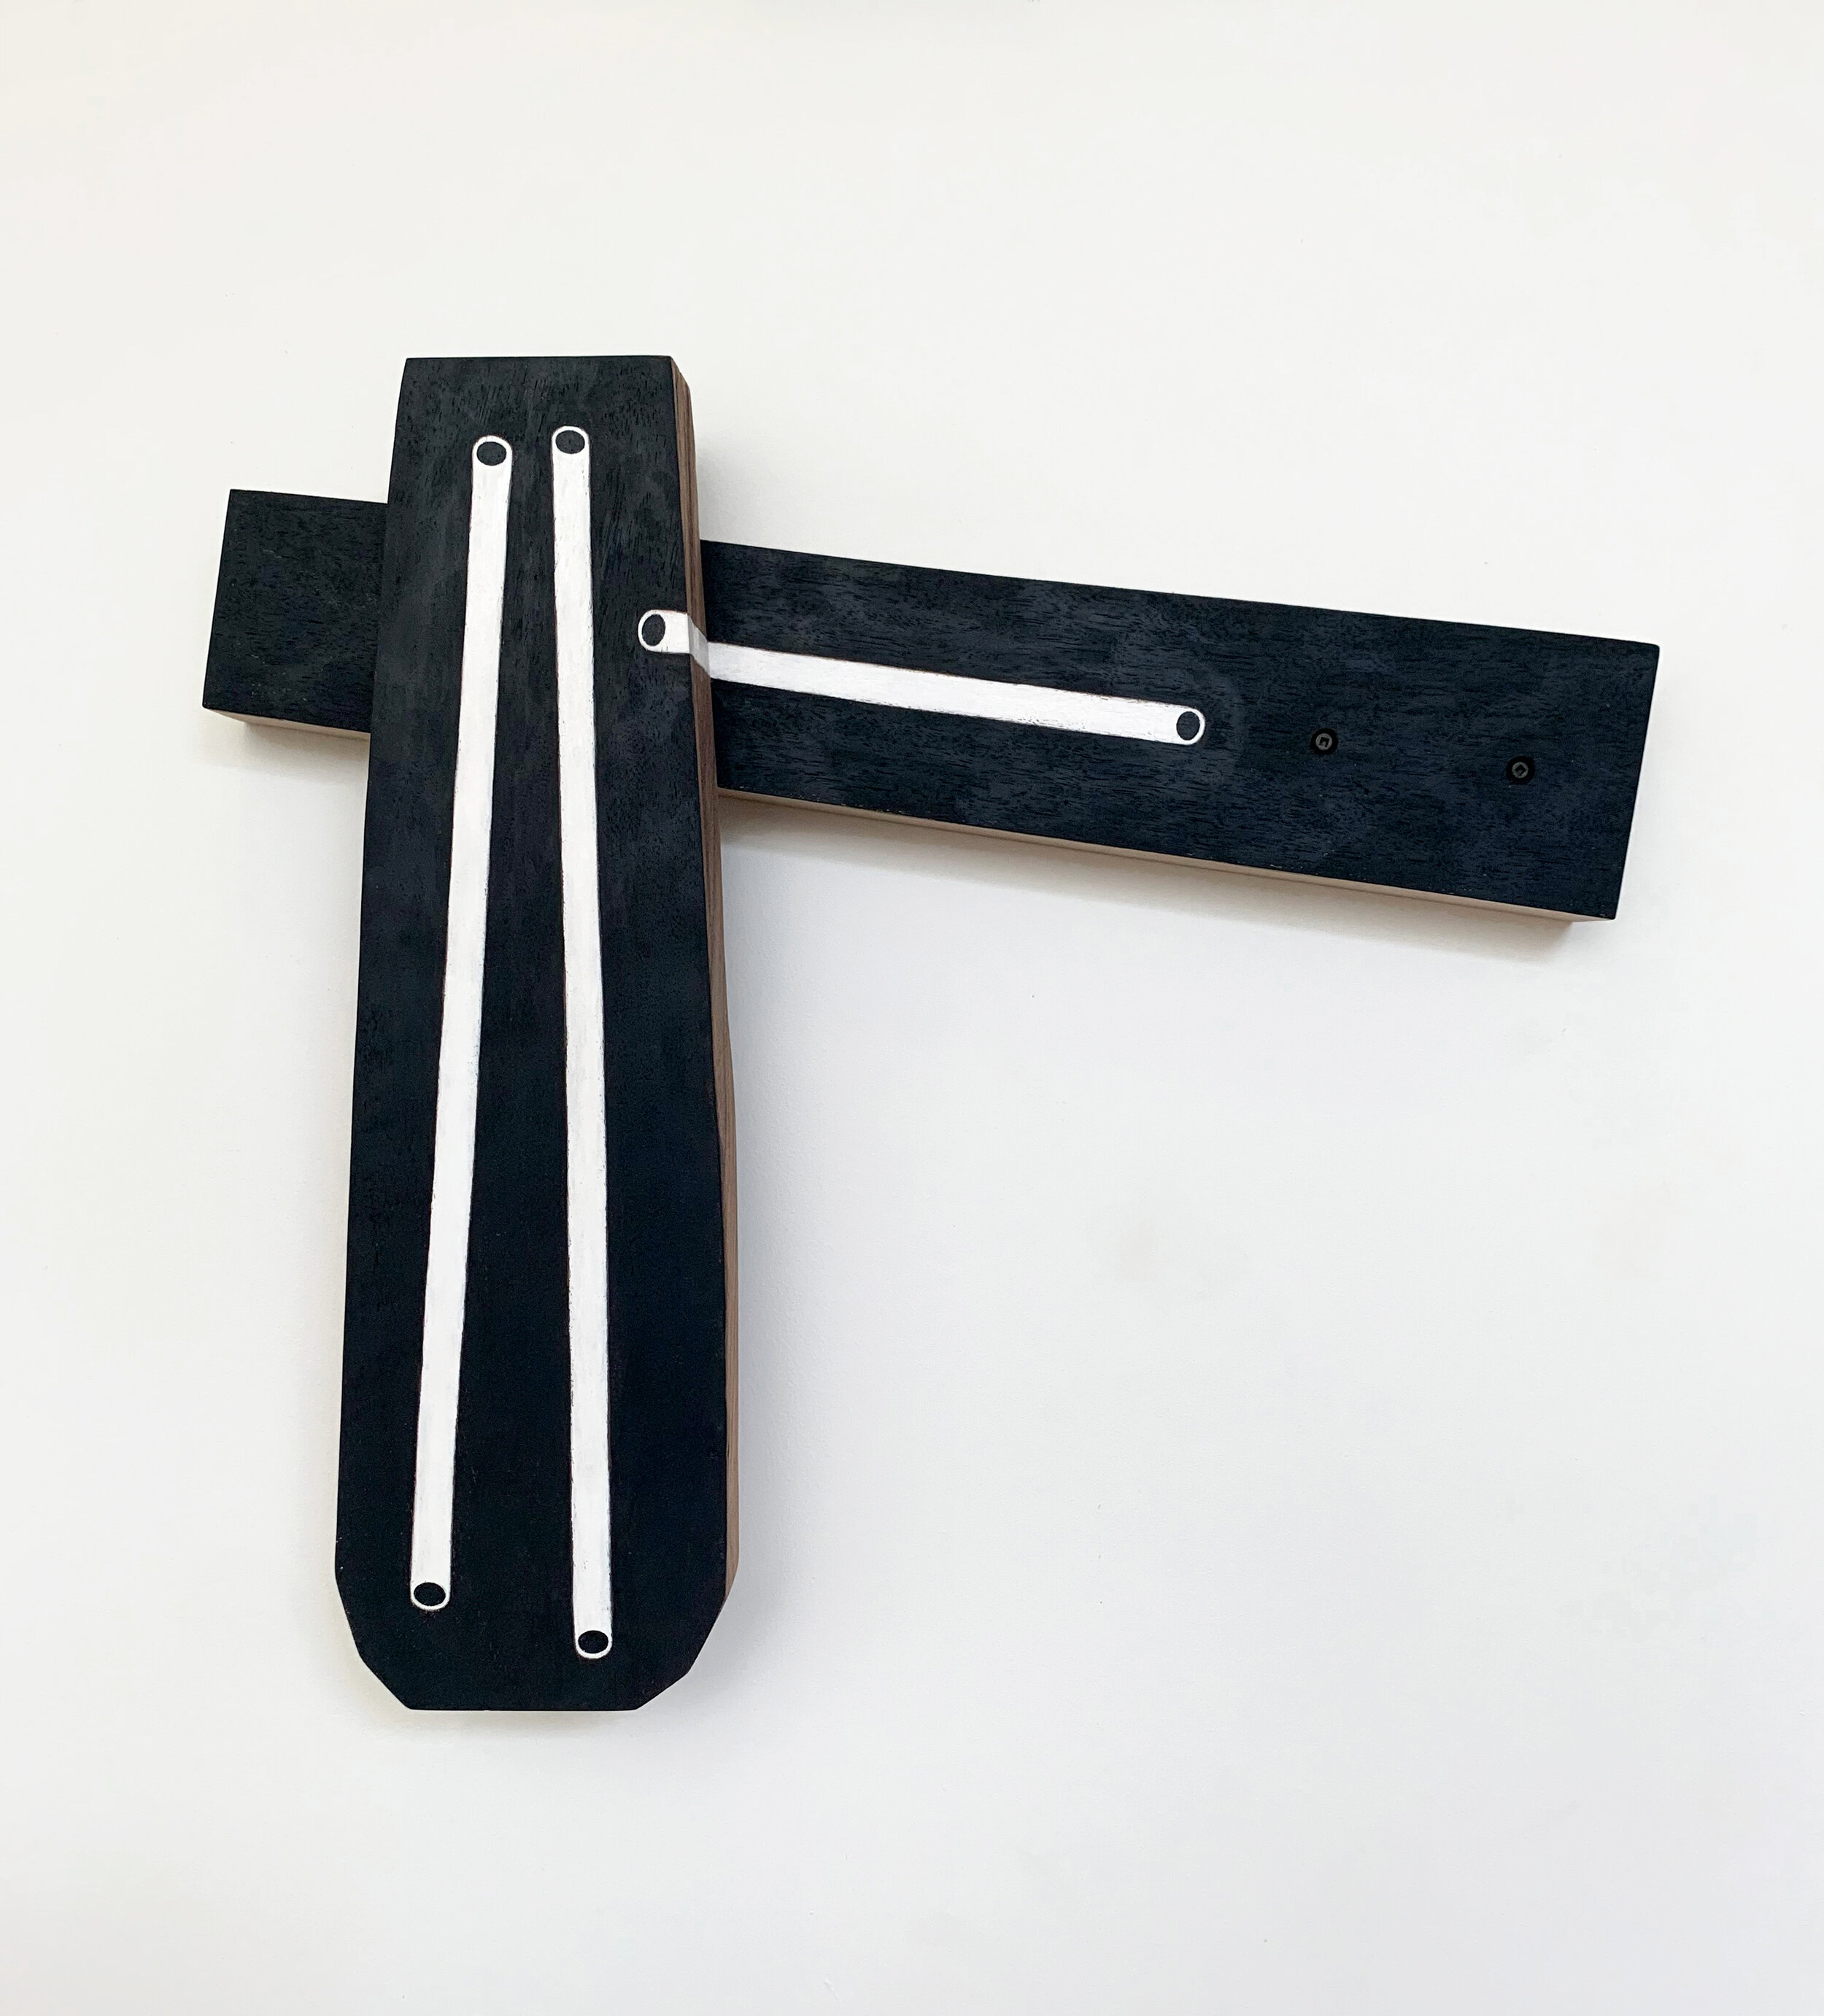  Christina Tenaglia, untitled, 2020, wood, paint, screws, 18” x 16" x 3” 